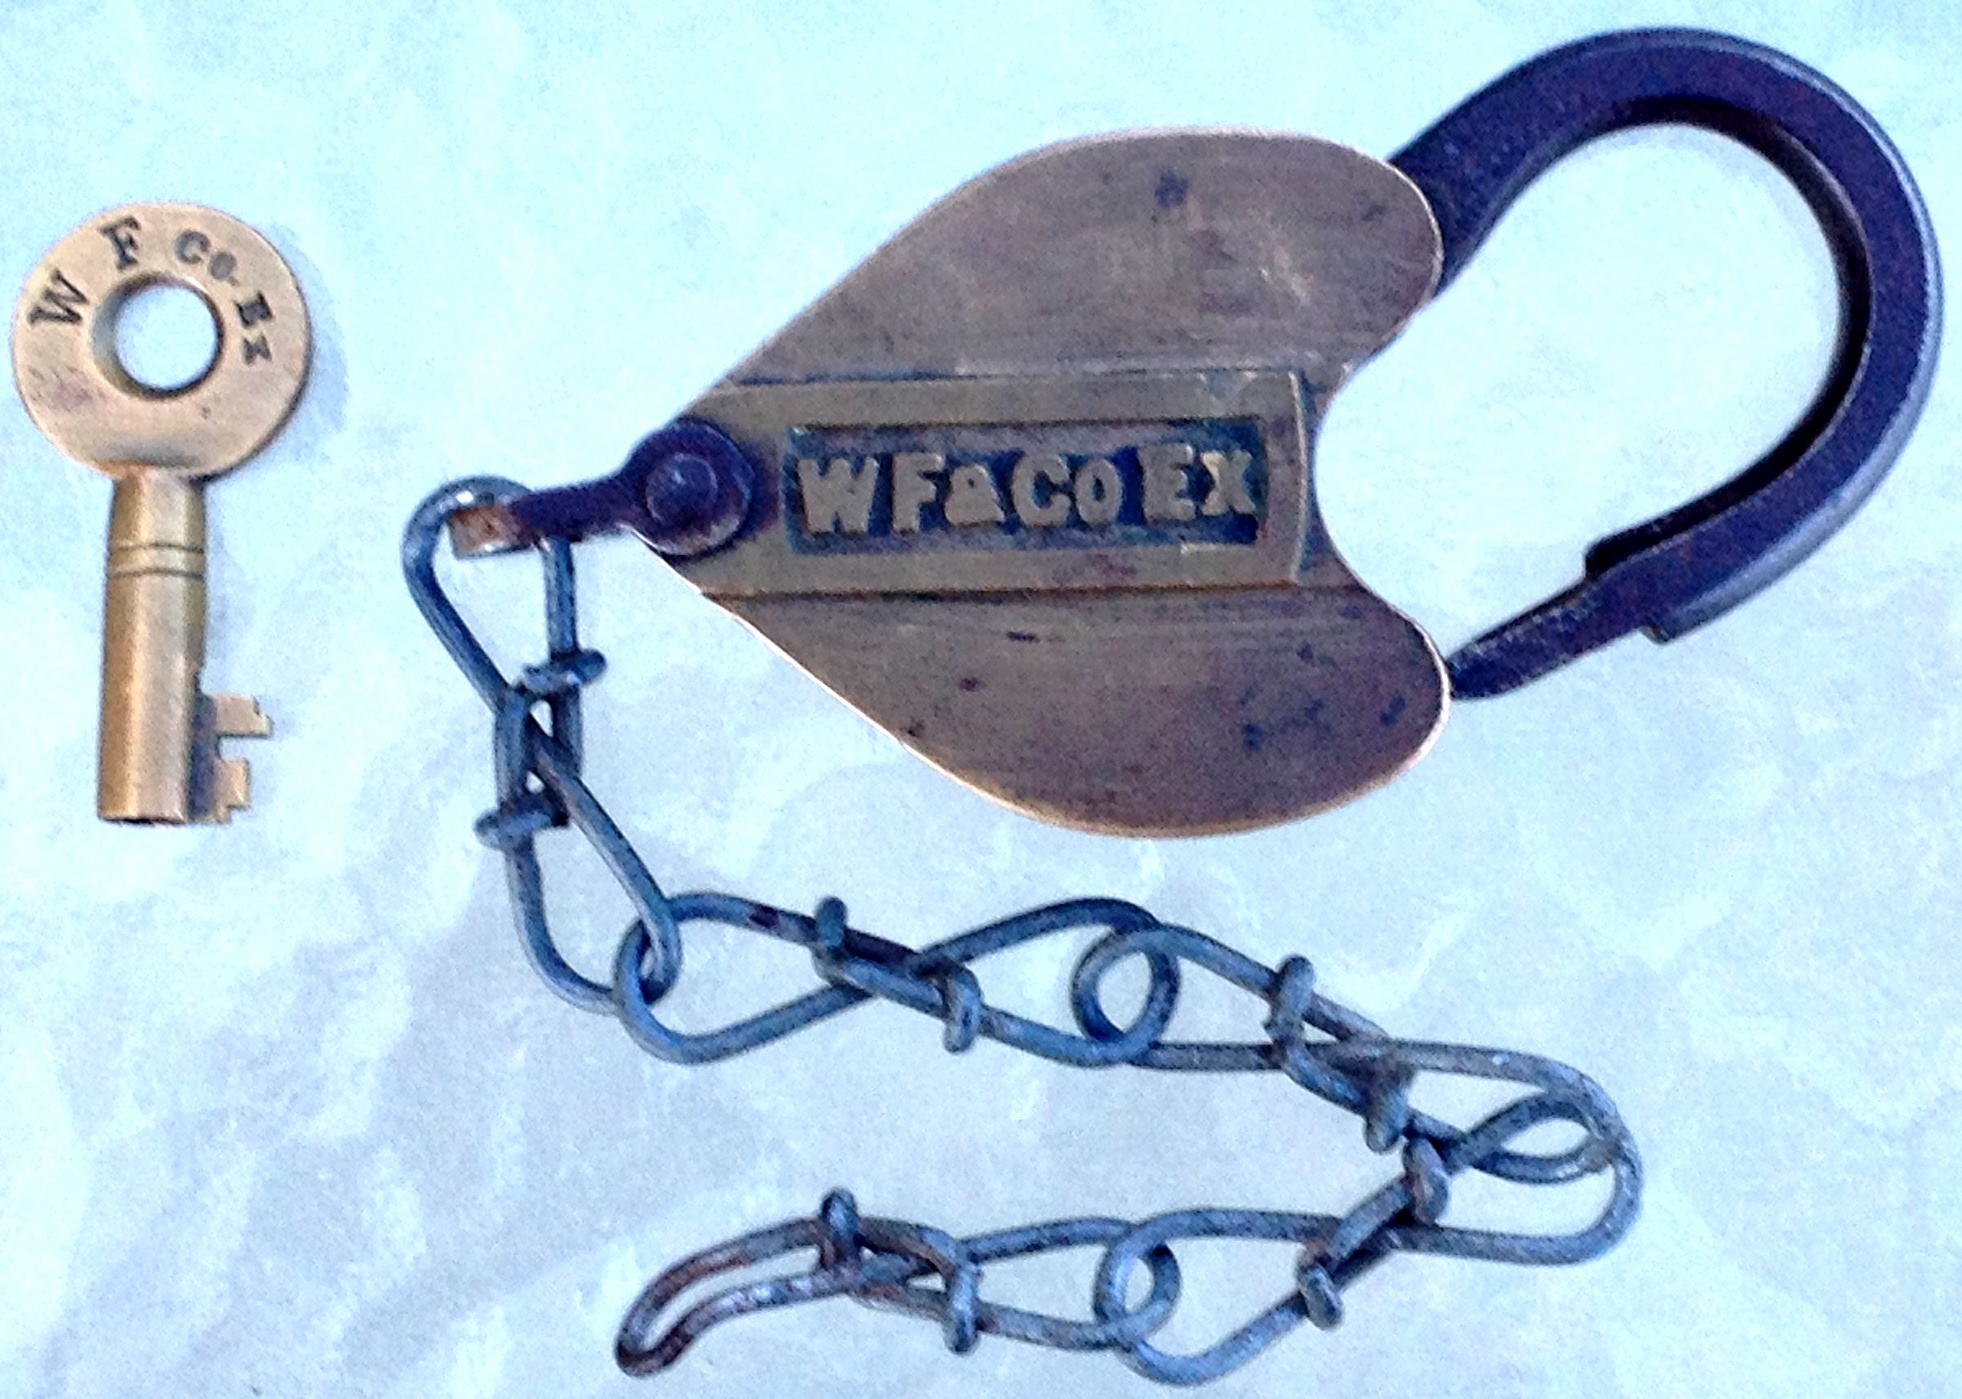 Wells Fargo & Co.'s Express Locks & Keys